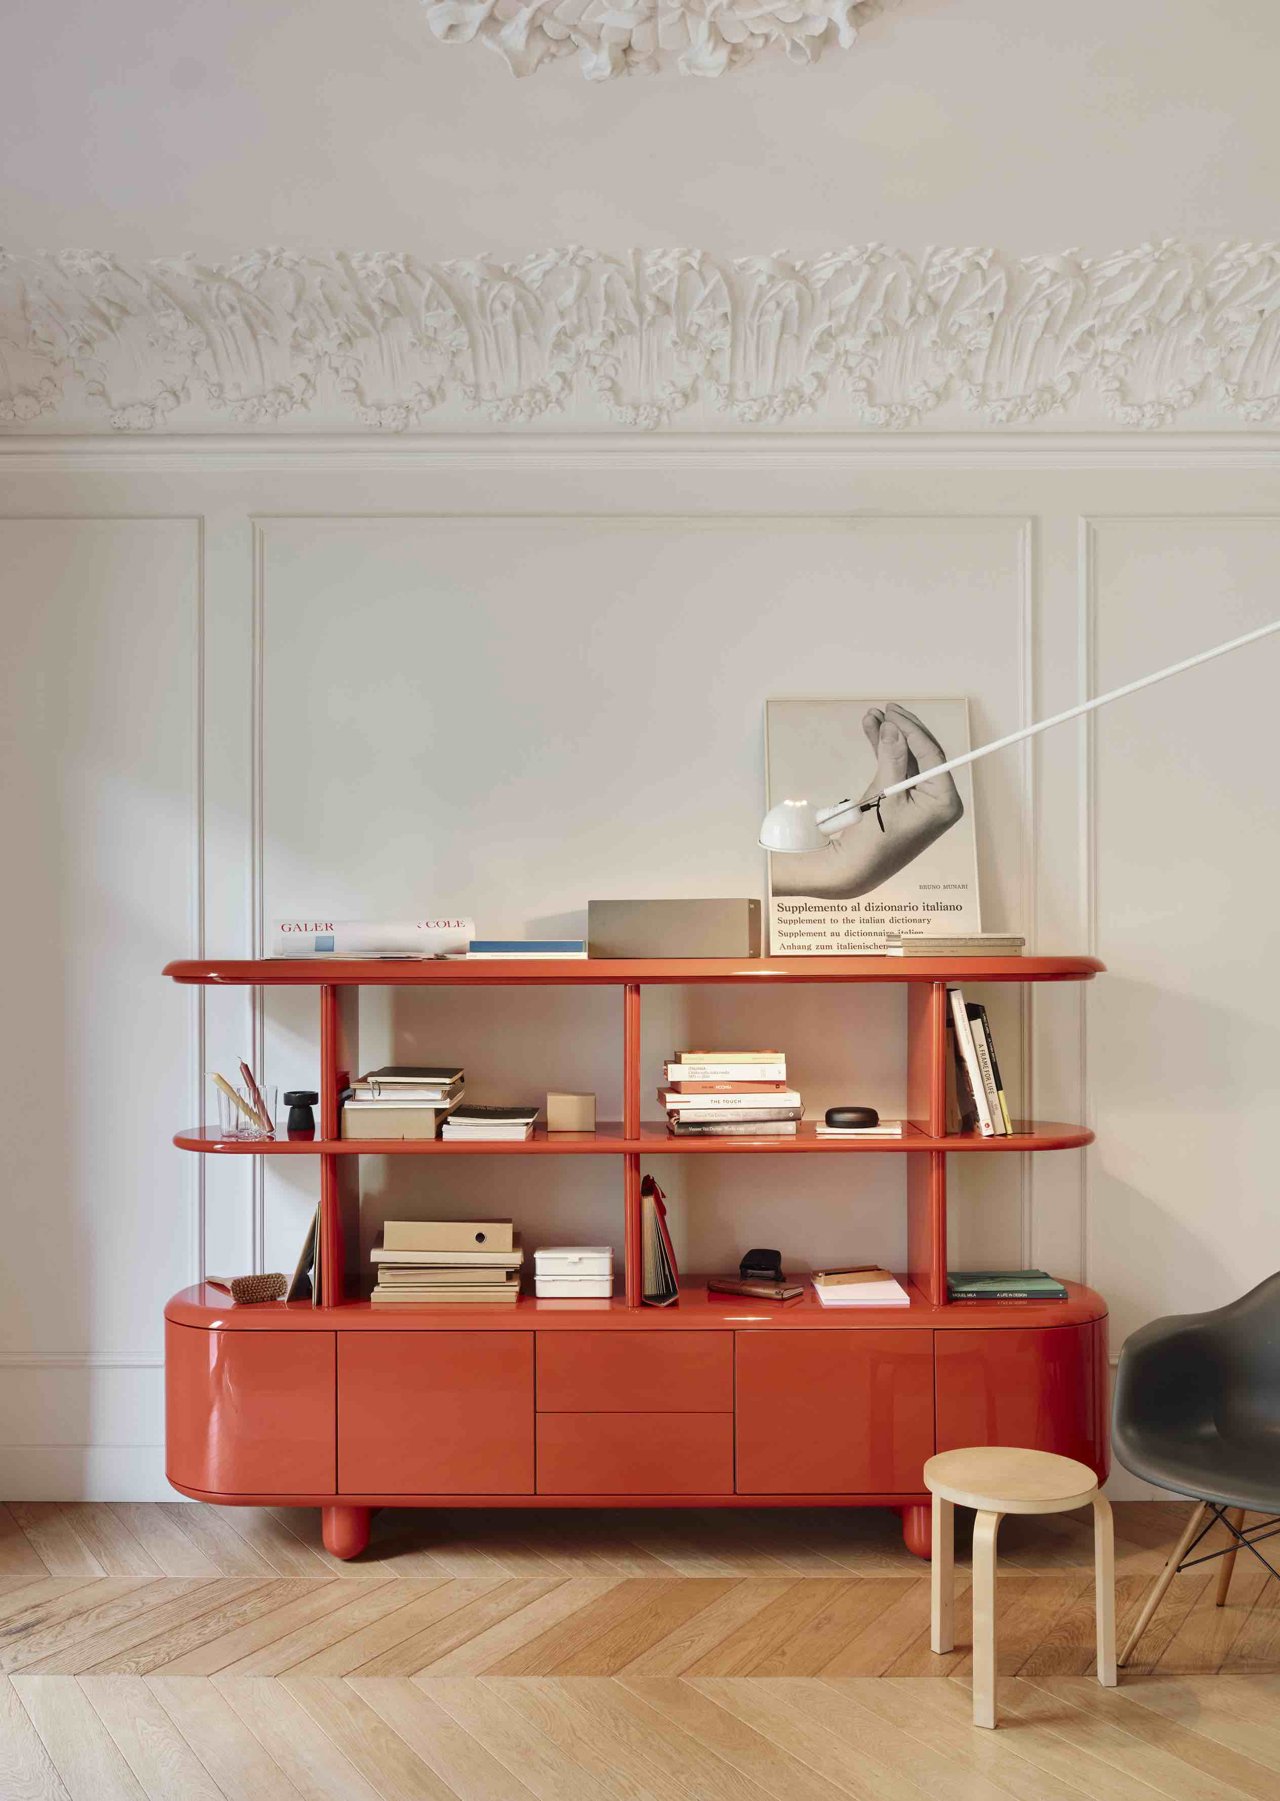 Mueble color rojo piso clásico